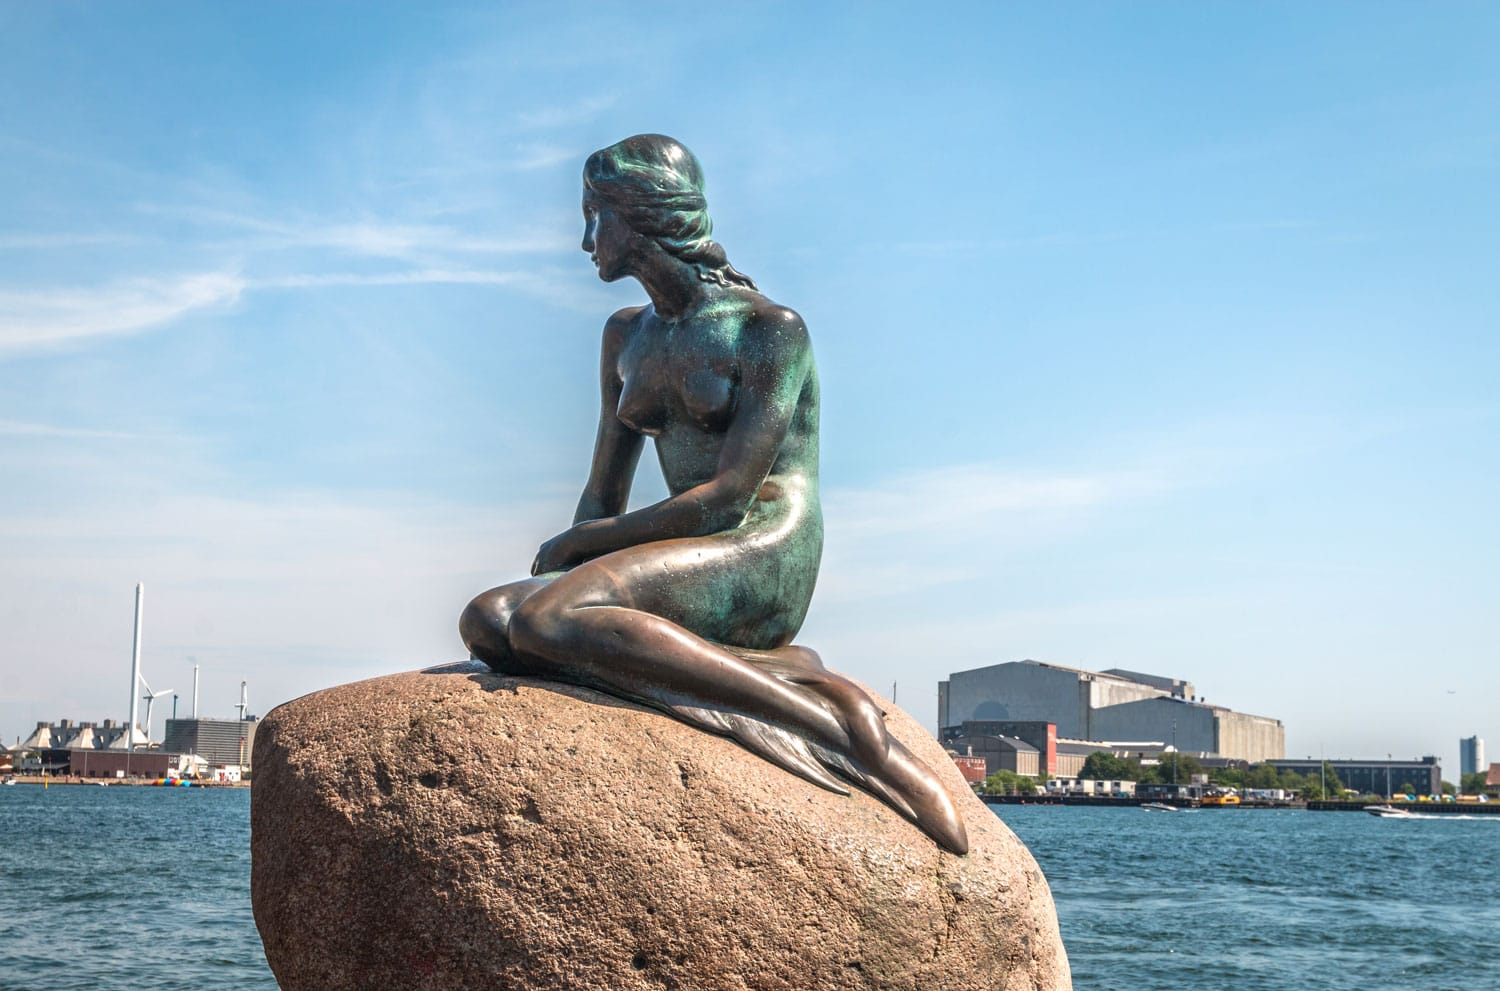 Άποψη του αγάλματος της μικρής γοργόνας στην Κοπεγχάγη, Δανία